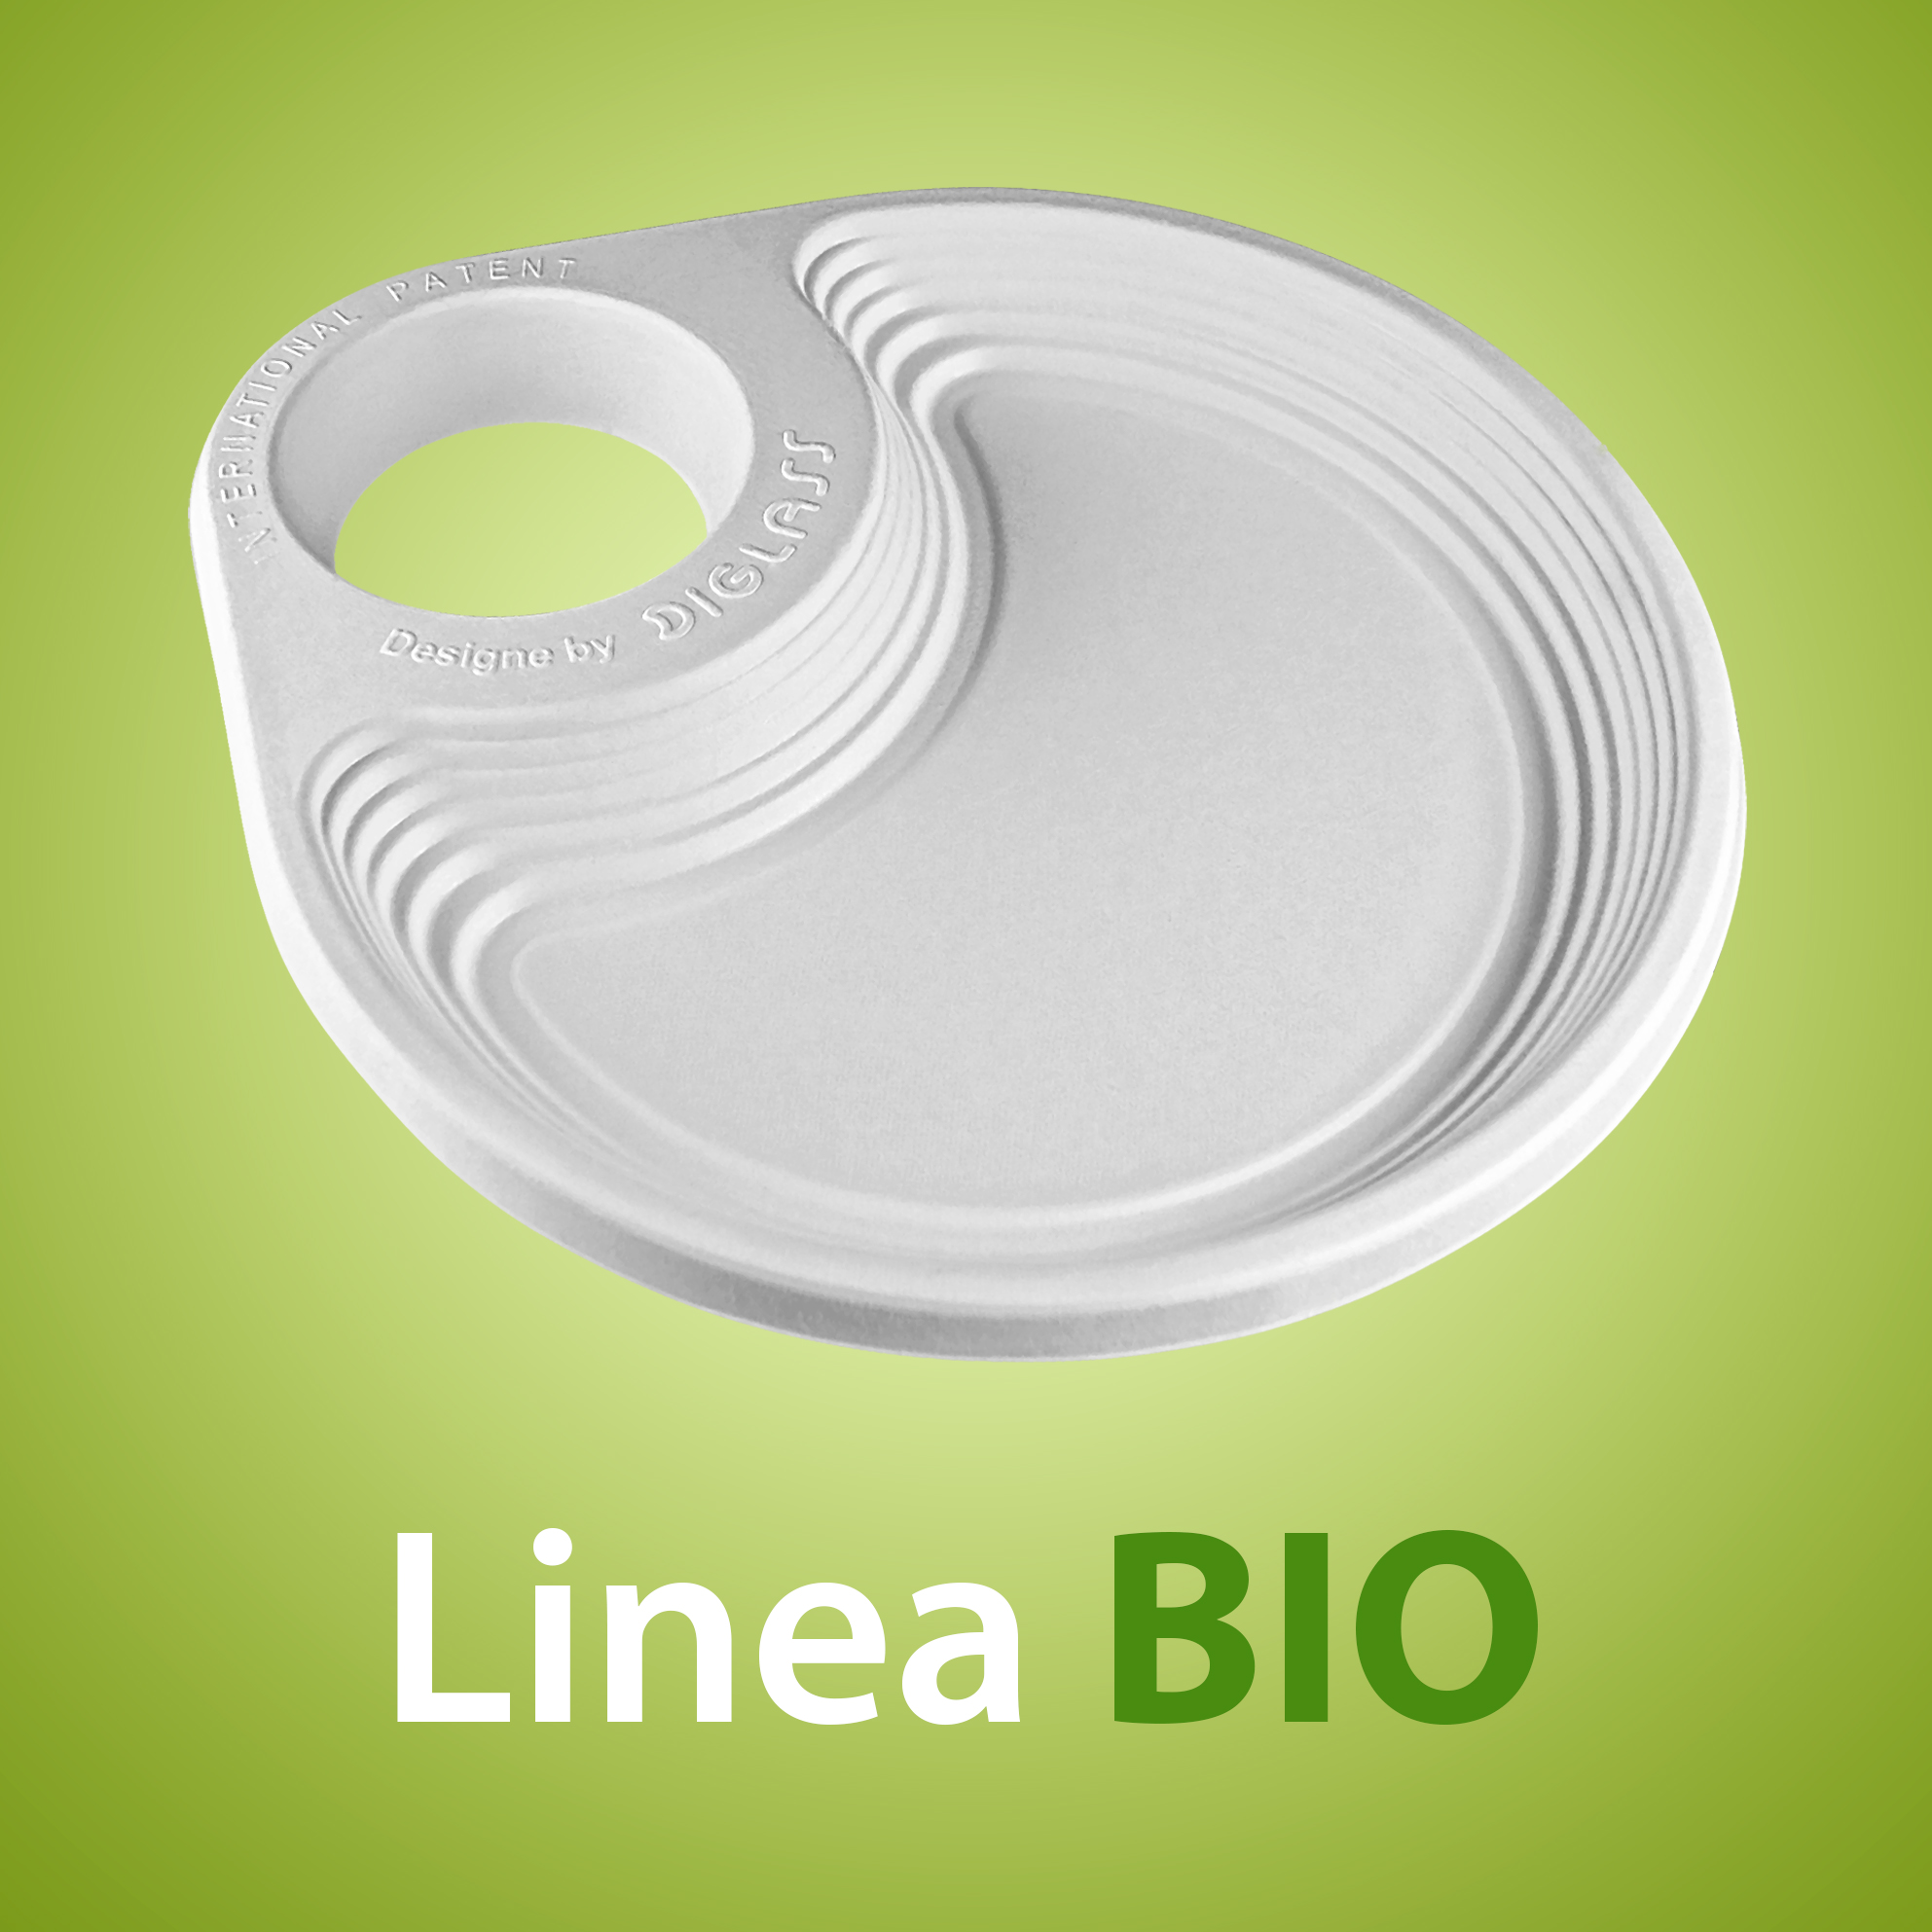 Linea BIO - Biodegradabile, realizzato al 100% in fibre vegetali estratte da canna da zucchero, sterilizzato ai raggi ultravioletti, bio compostabile e reciclabile, utilizzabile anche in microonde!